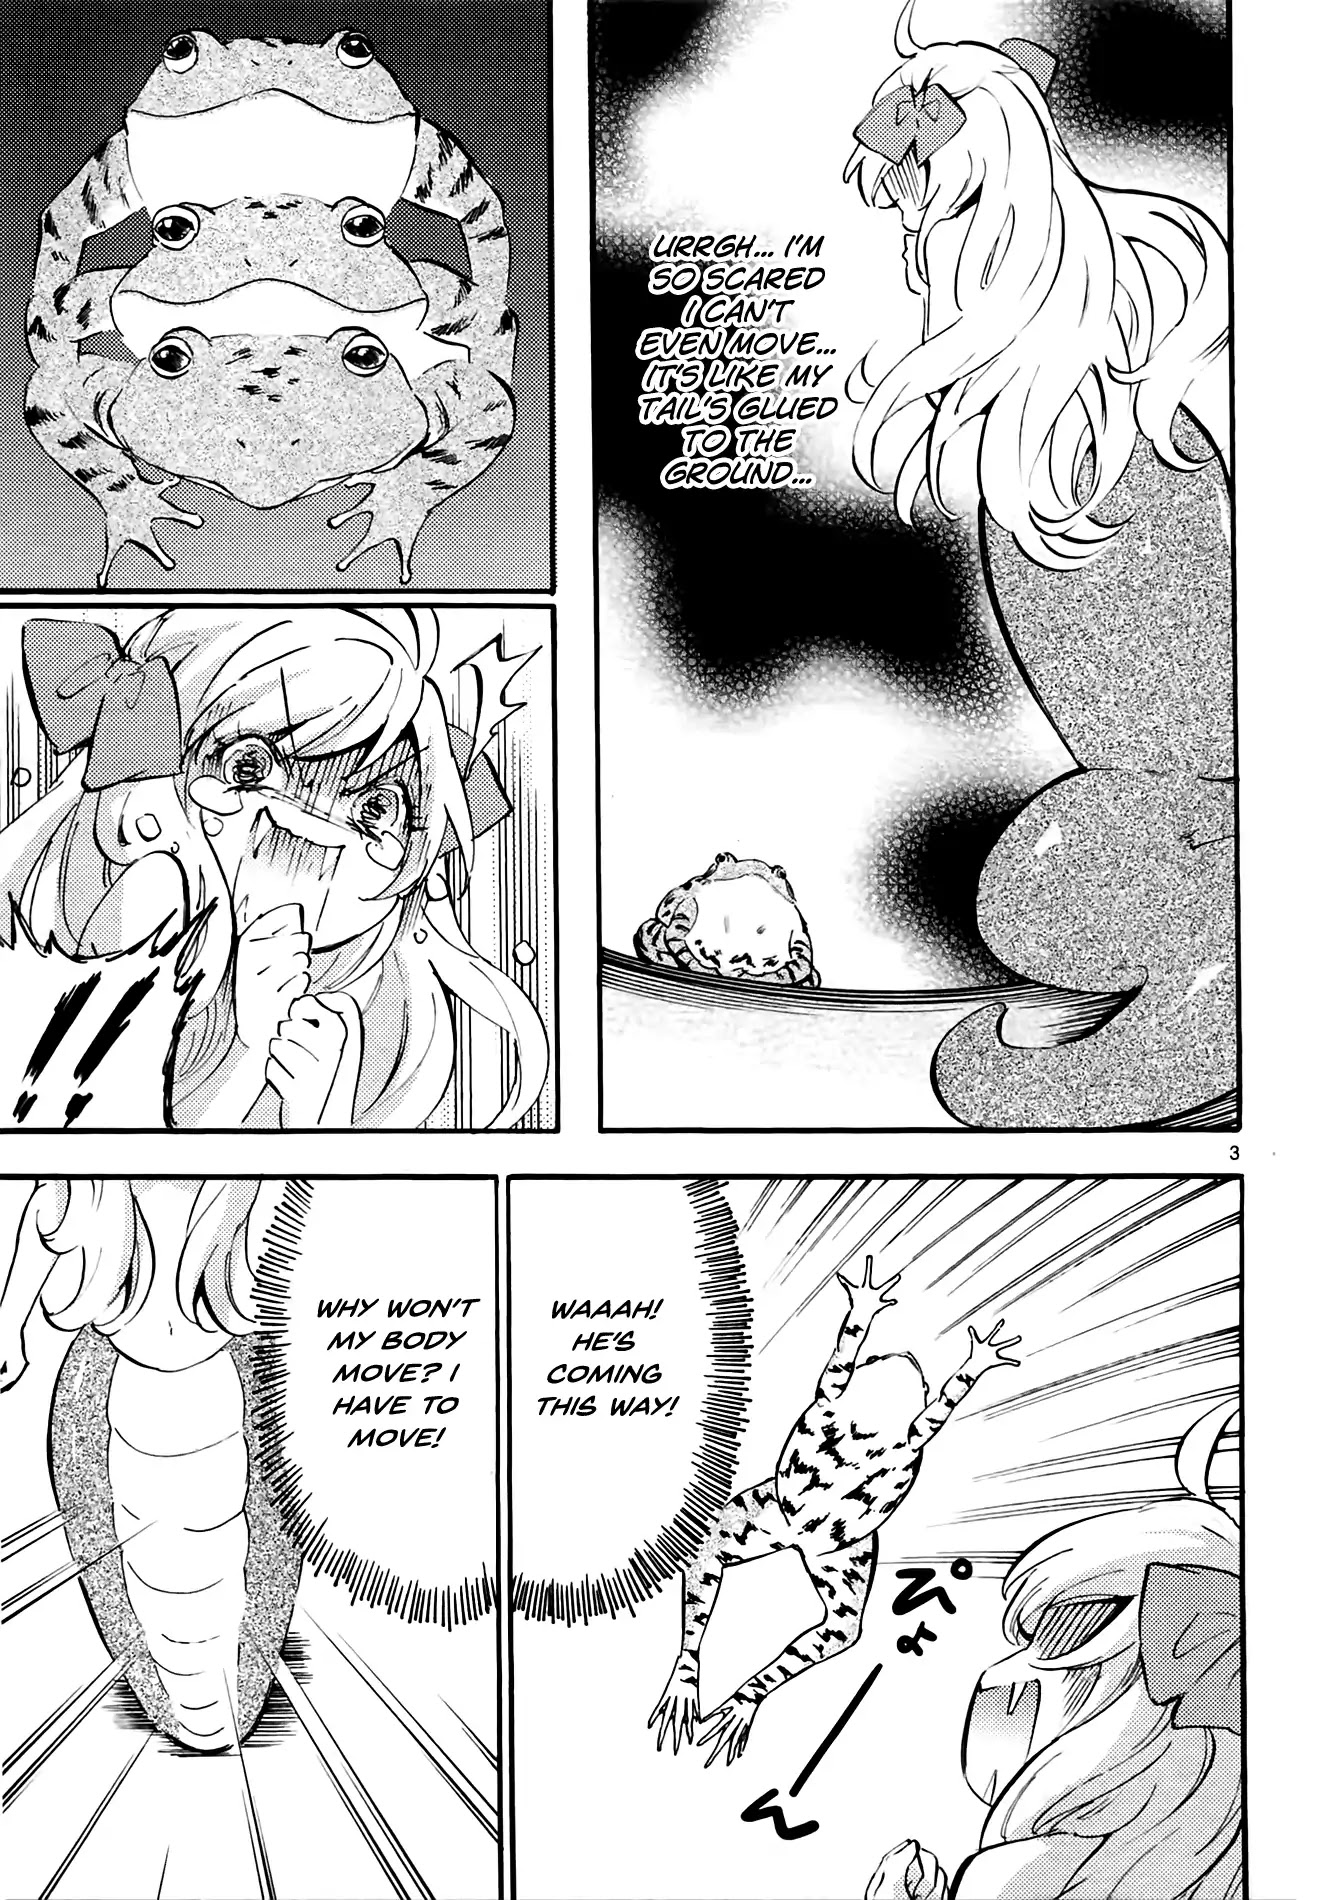 Jashin-chan Dropkick chapter 35 page 3